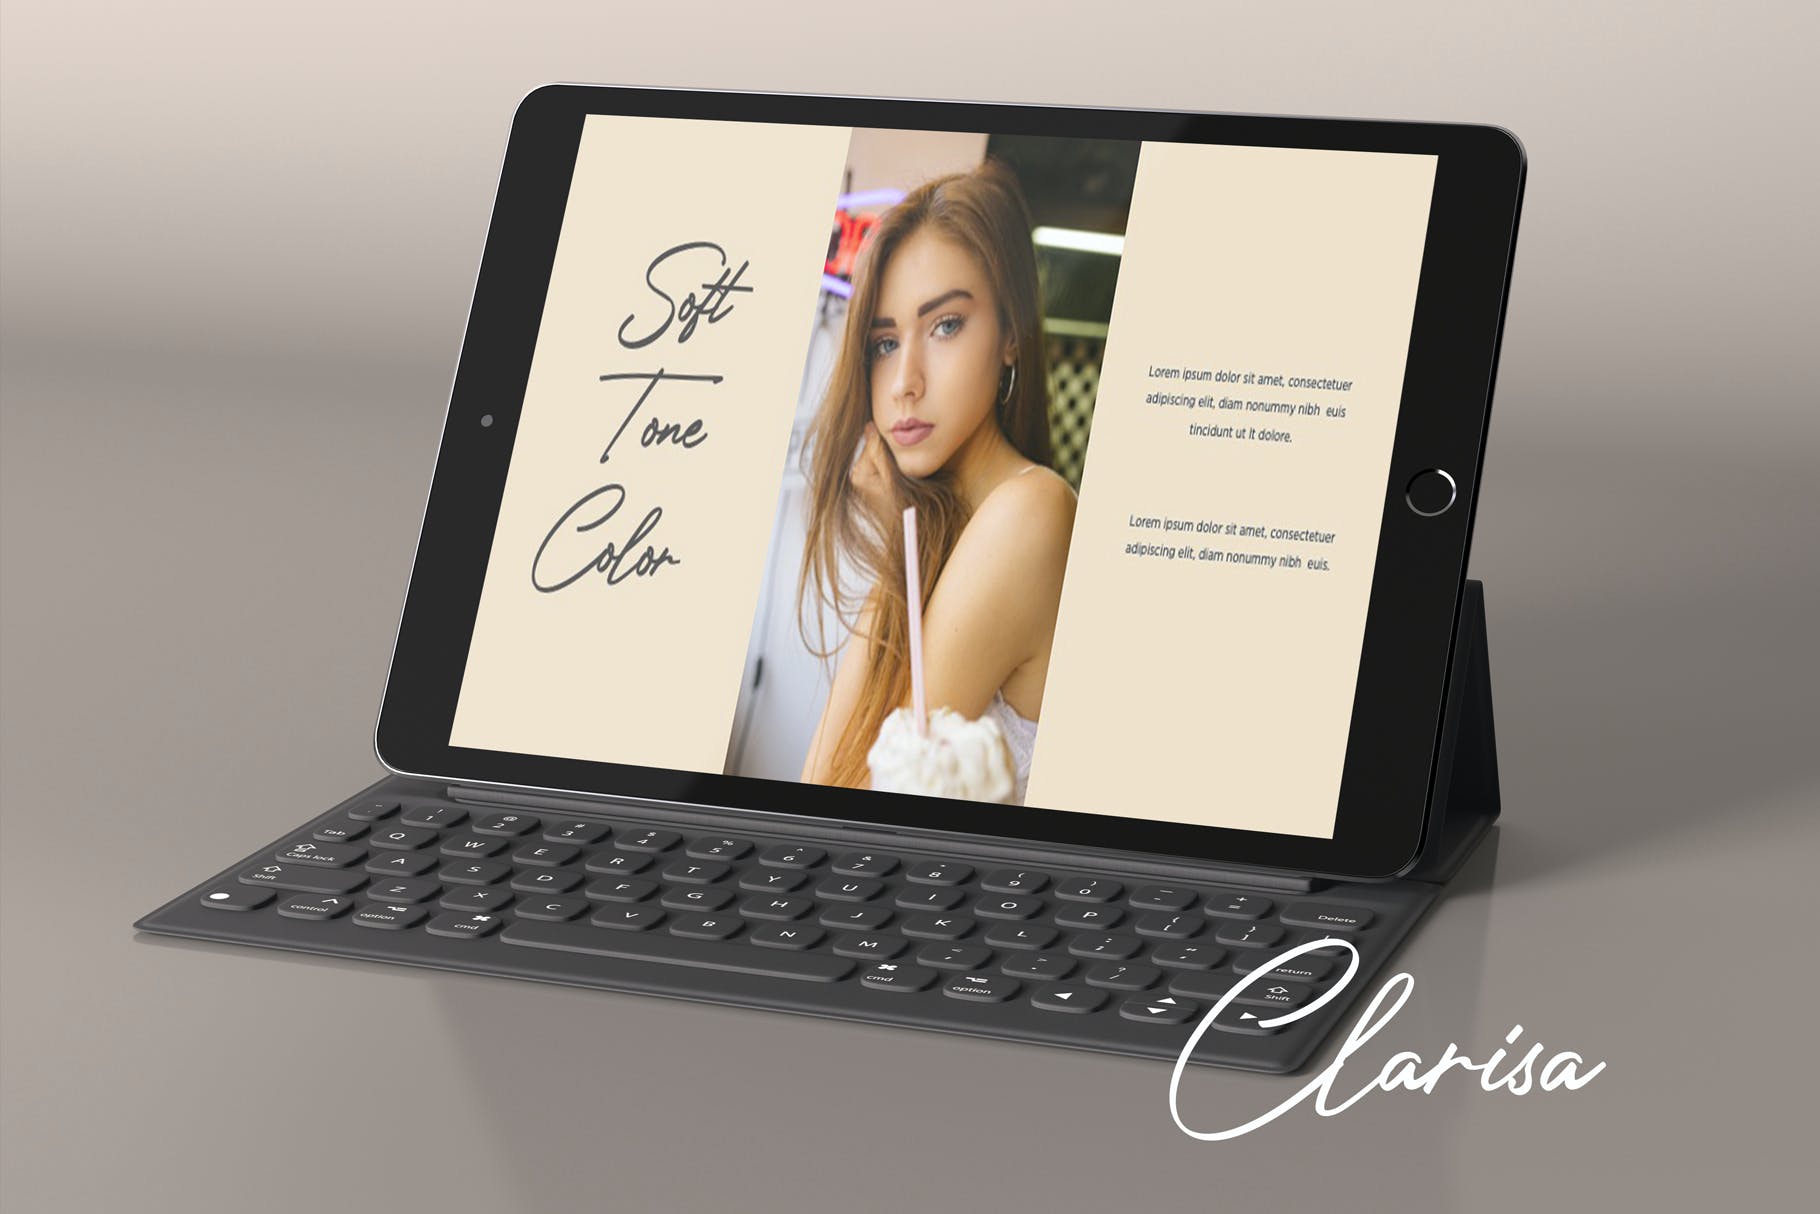 品牌宣传美容美妆PPT演示文稿 CLARISA – Powerpoint Template设计素材模板